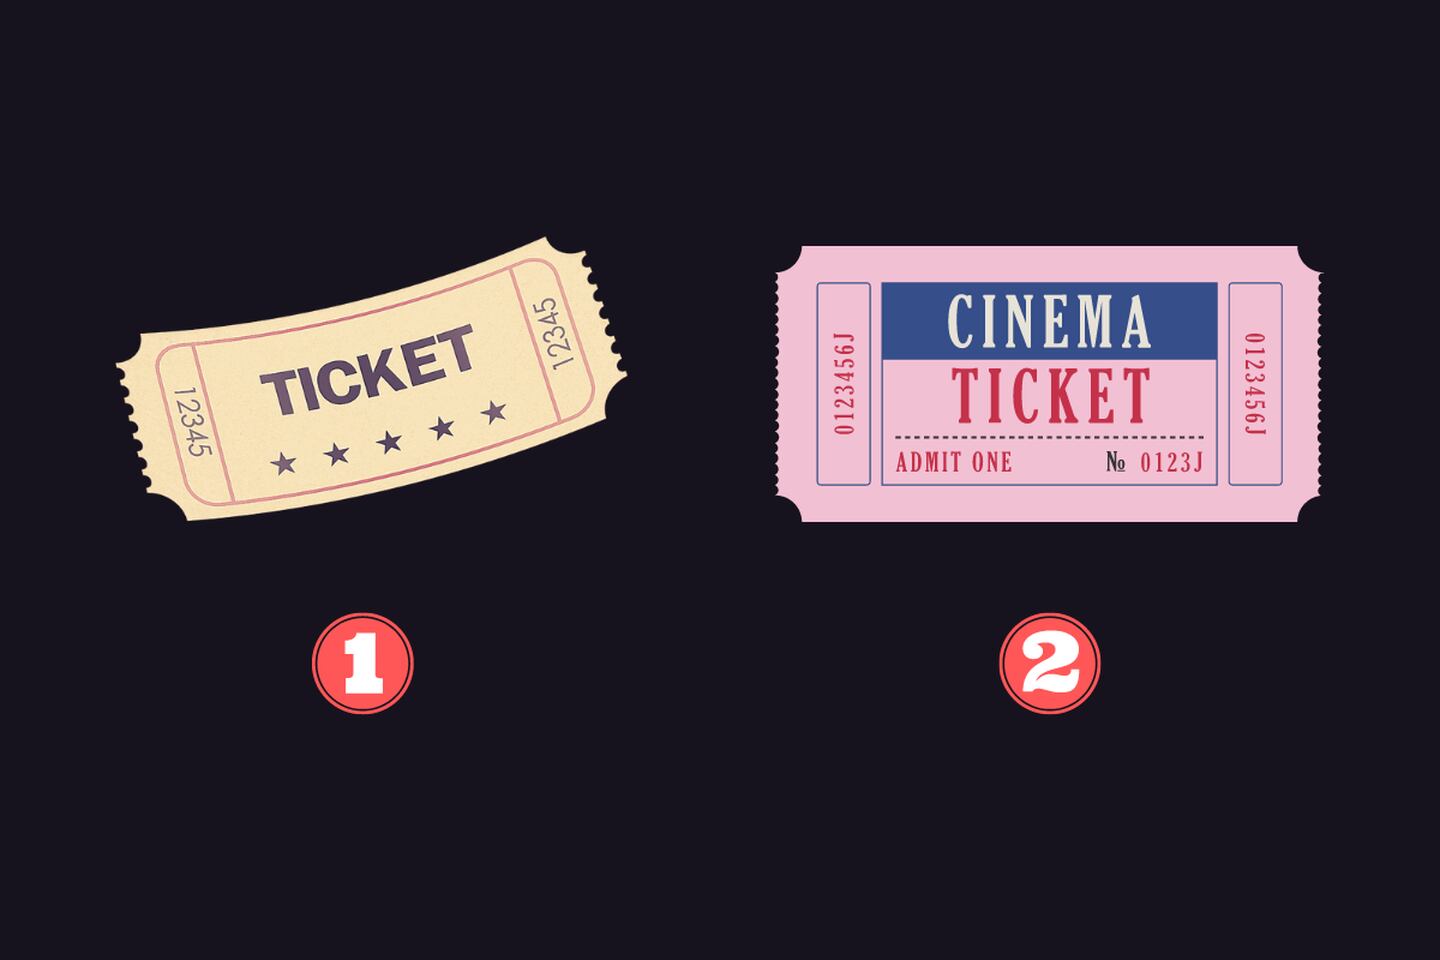 dos tickets diferentes: uno beige y otro rosado con más detalles.